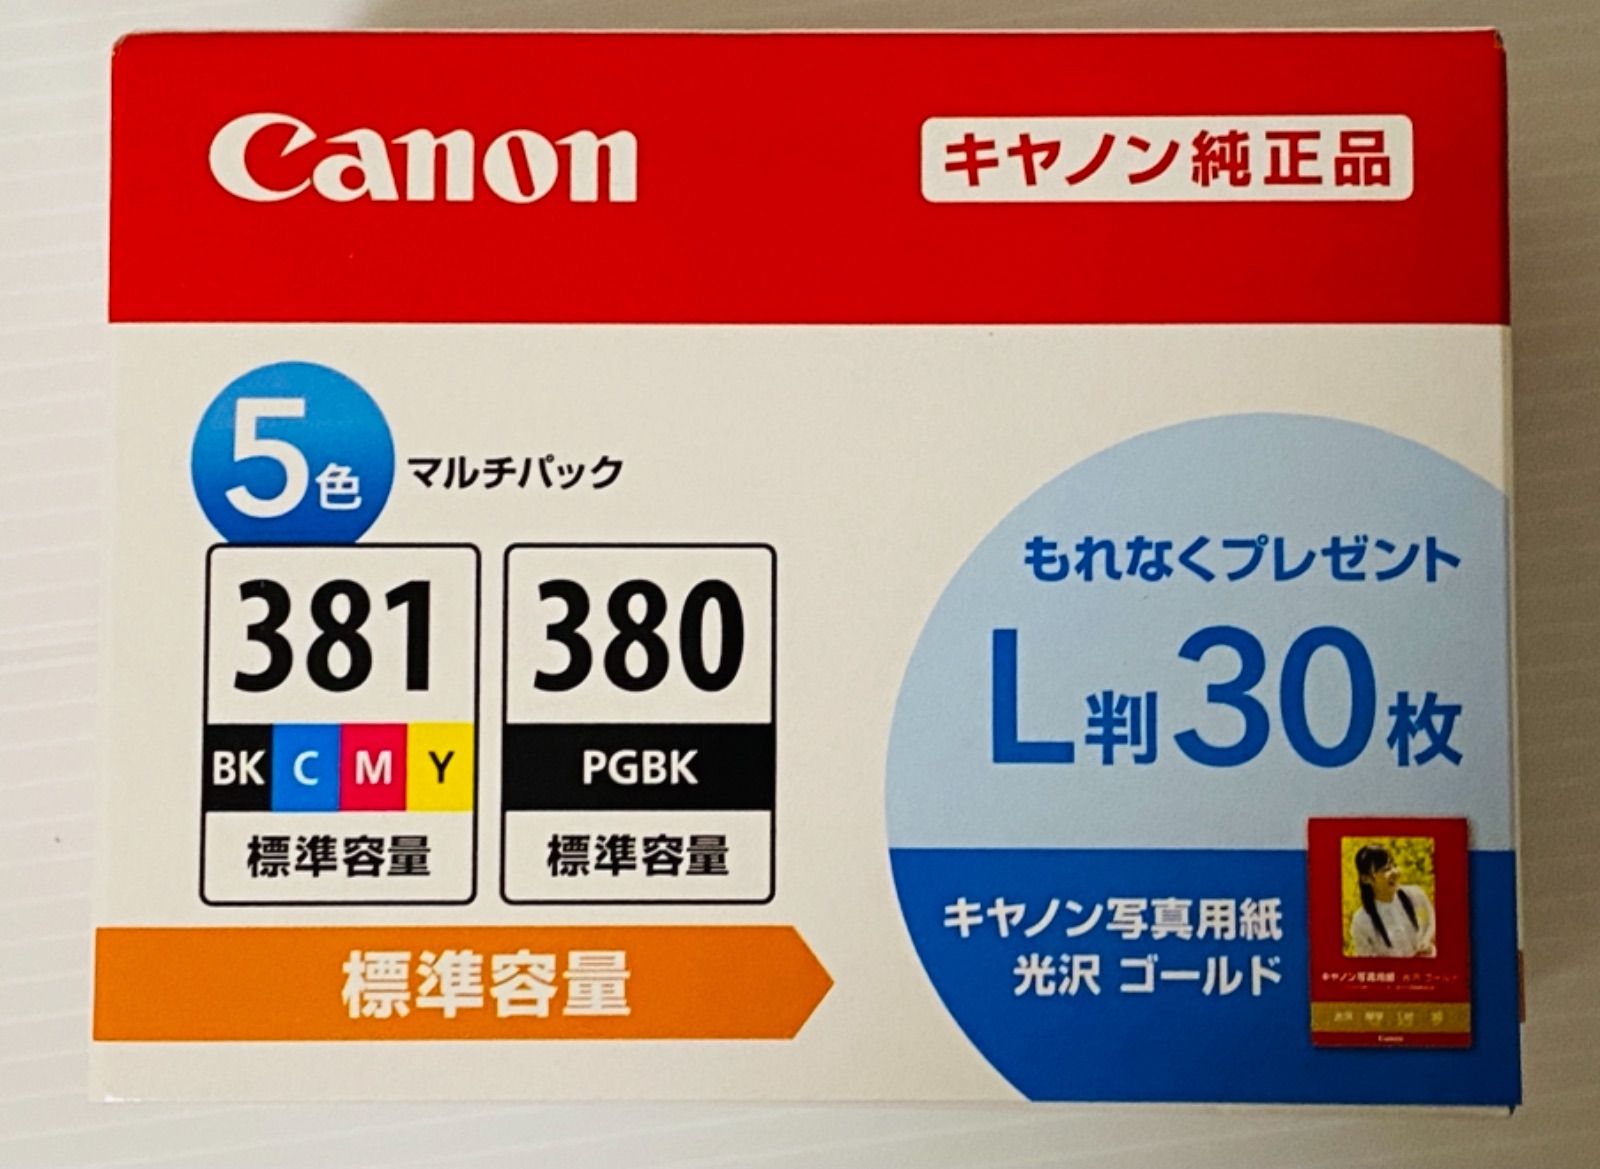 【新品純正品】キヤノン 純正品 BCI-381+380/5MP 5色 インク